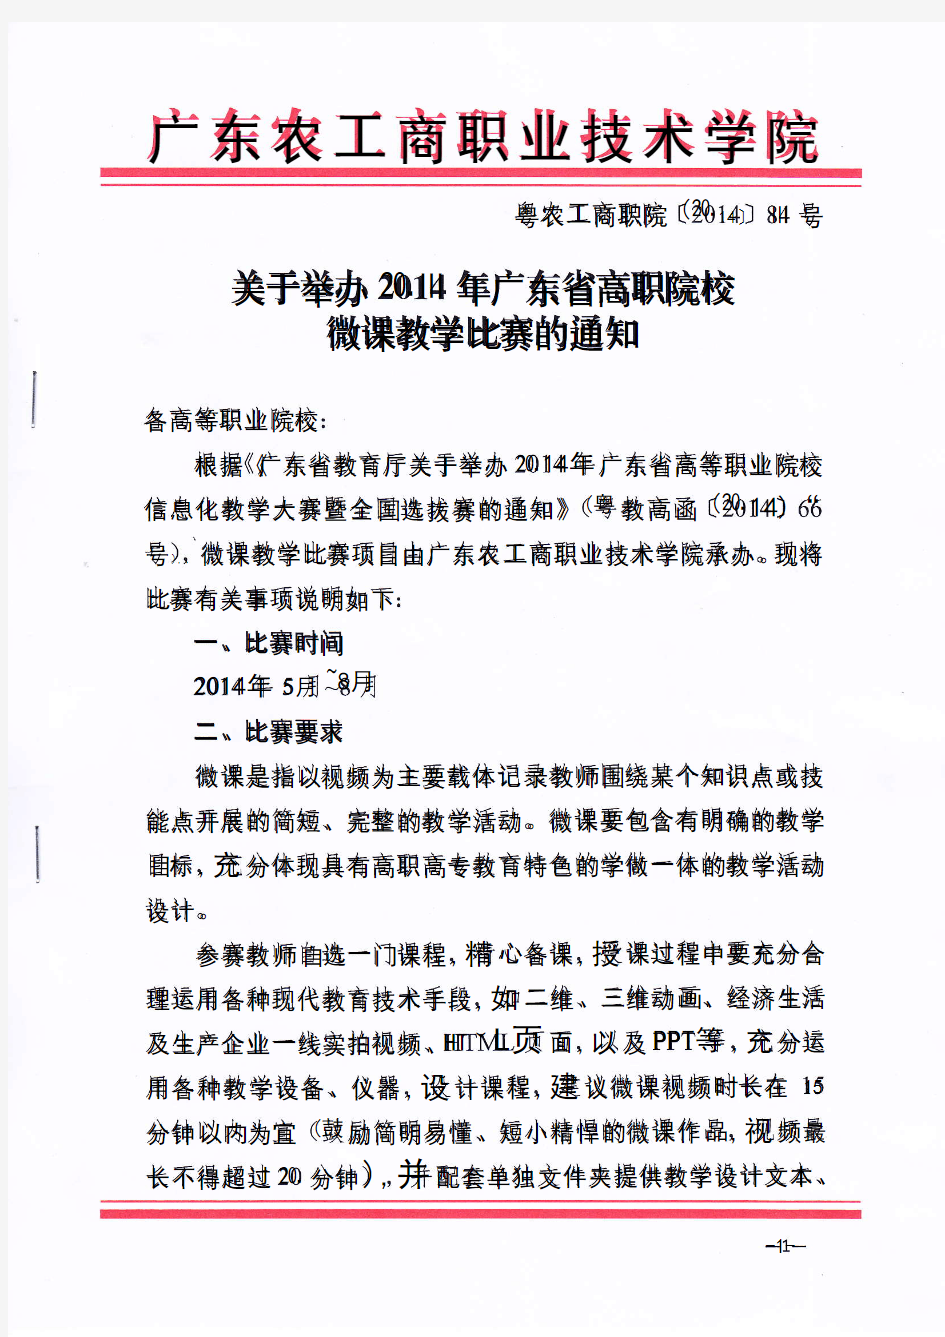 关于举办2014年广东省高职院校微课教学比赛的通知